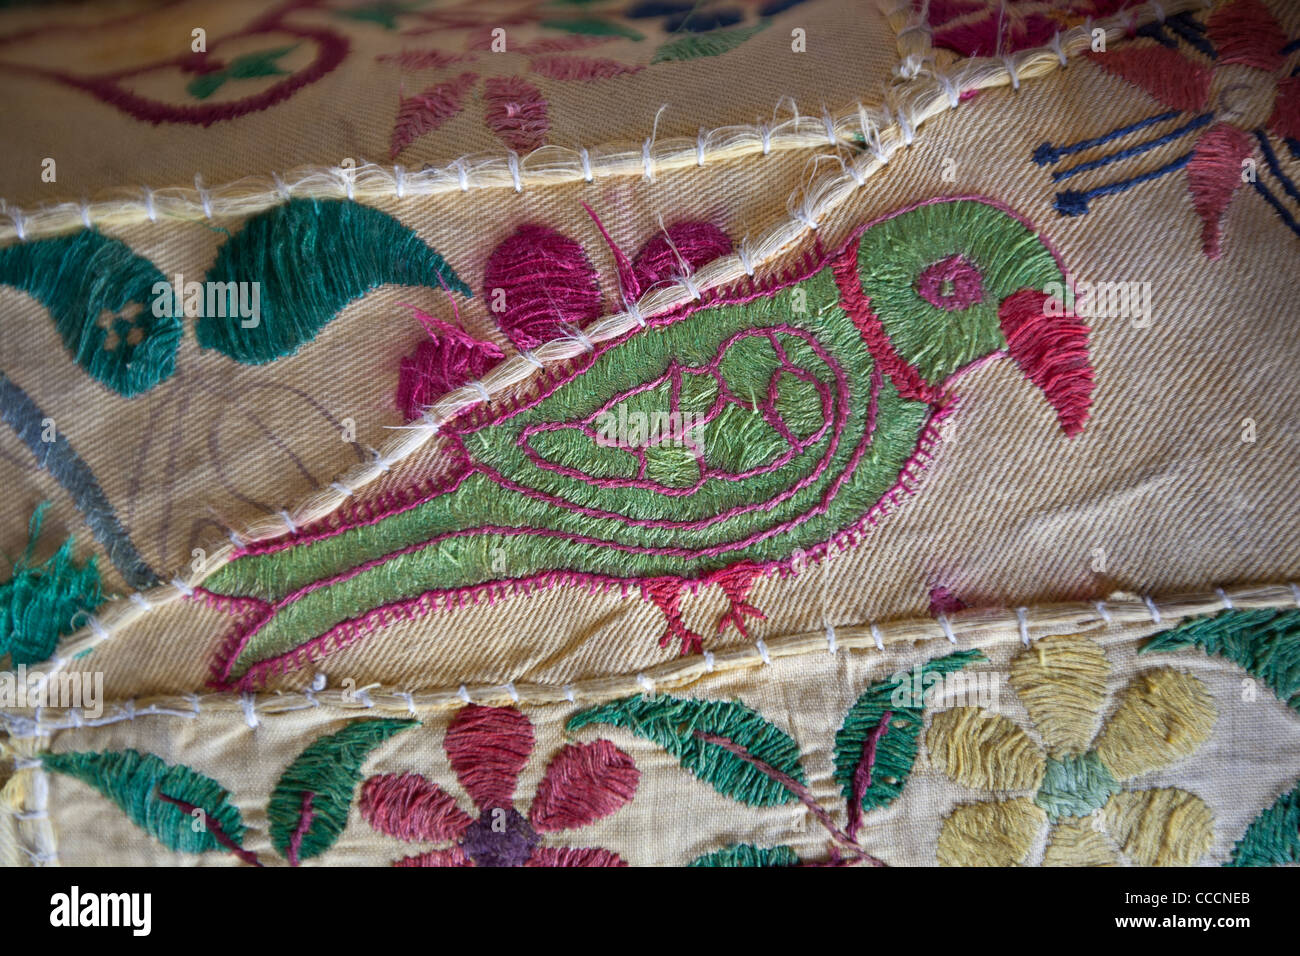 Détails de textiles, représentant des paons et perroquets, à Jodhpur, au Rajasthan, Inde Banque D'Images